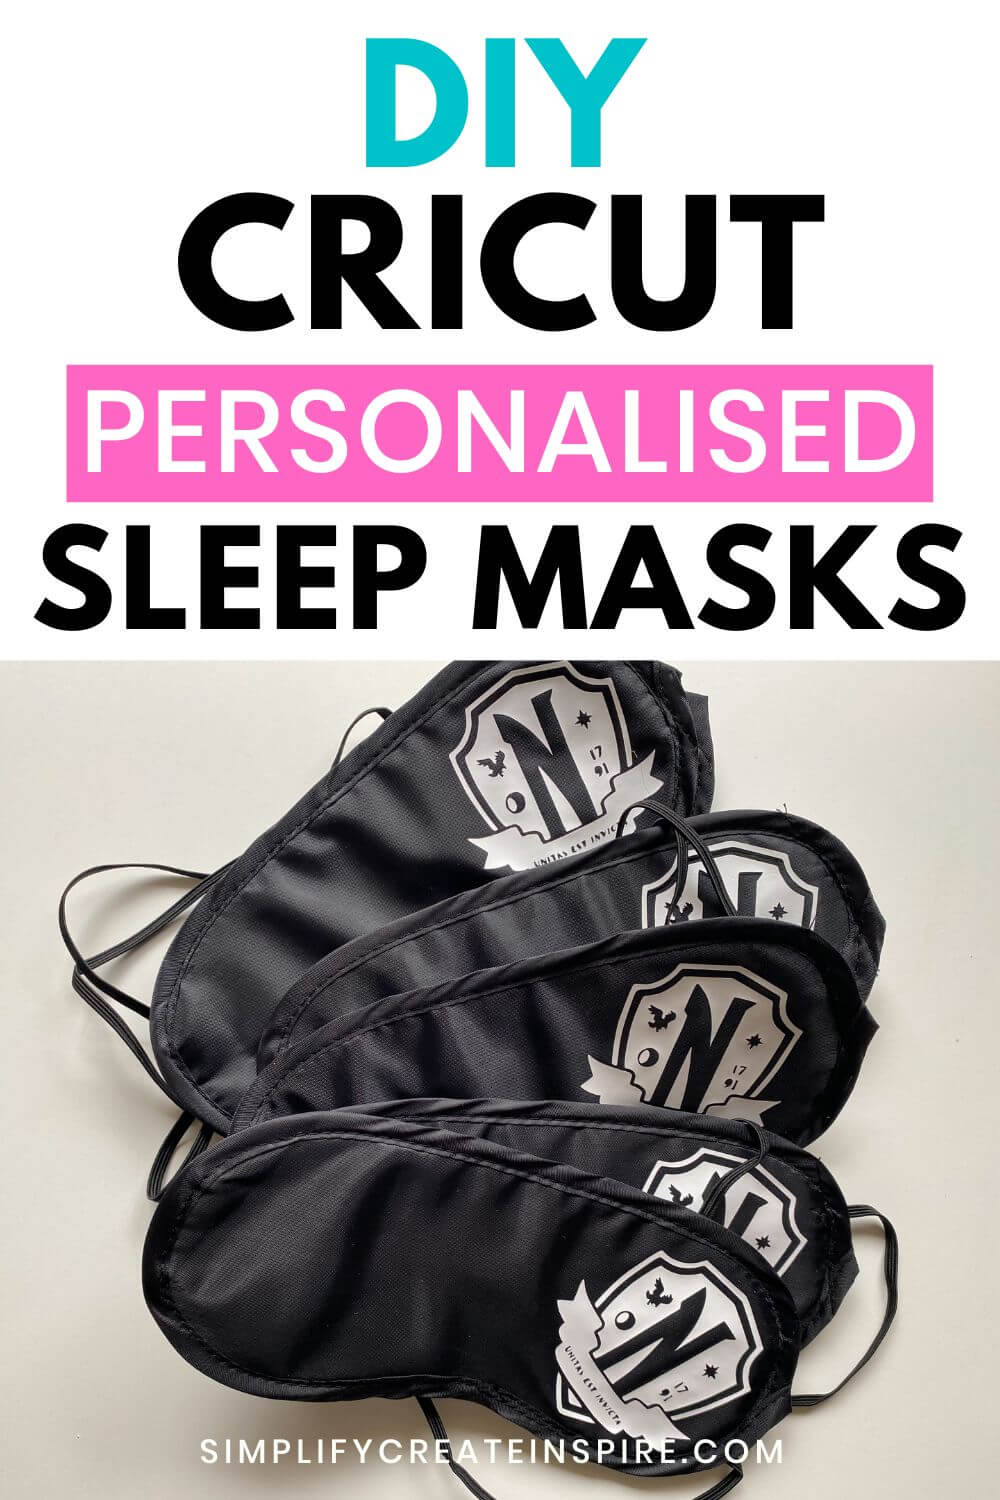 Diy cricut sleep masks - personalised diy sleep masks.